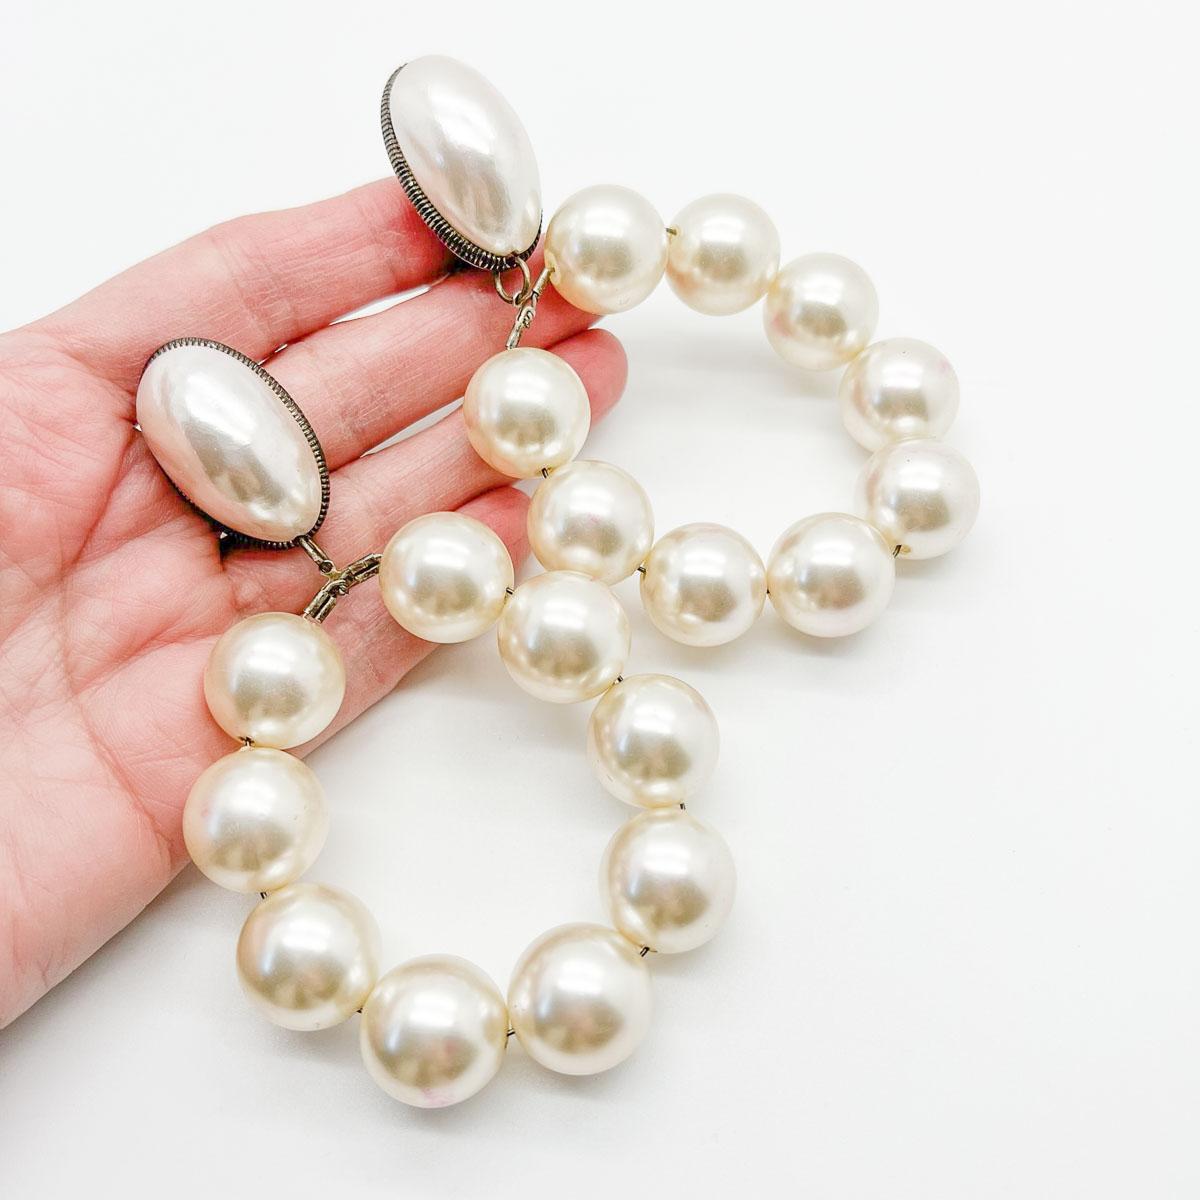 Diese spektakulären Vintage Runway Pearl Hoop Earrings sind der Inbegriff von Runway-Chic. Die Perlenspitzen im Mabé-Stil fallen zu neun großen, ganzen Perlen auf einem Reifen ab. 
Eine unsignierte Schönheit. Ein seltener Schatz. Nur weil ein